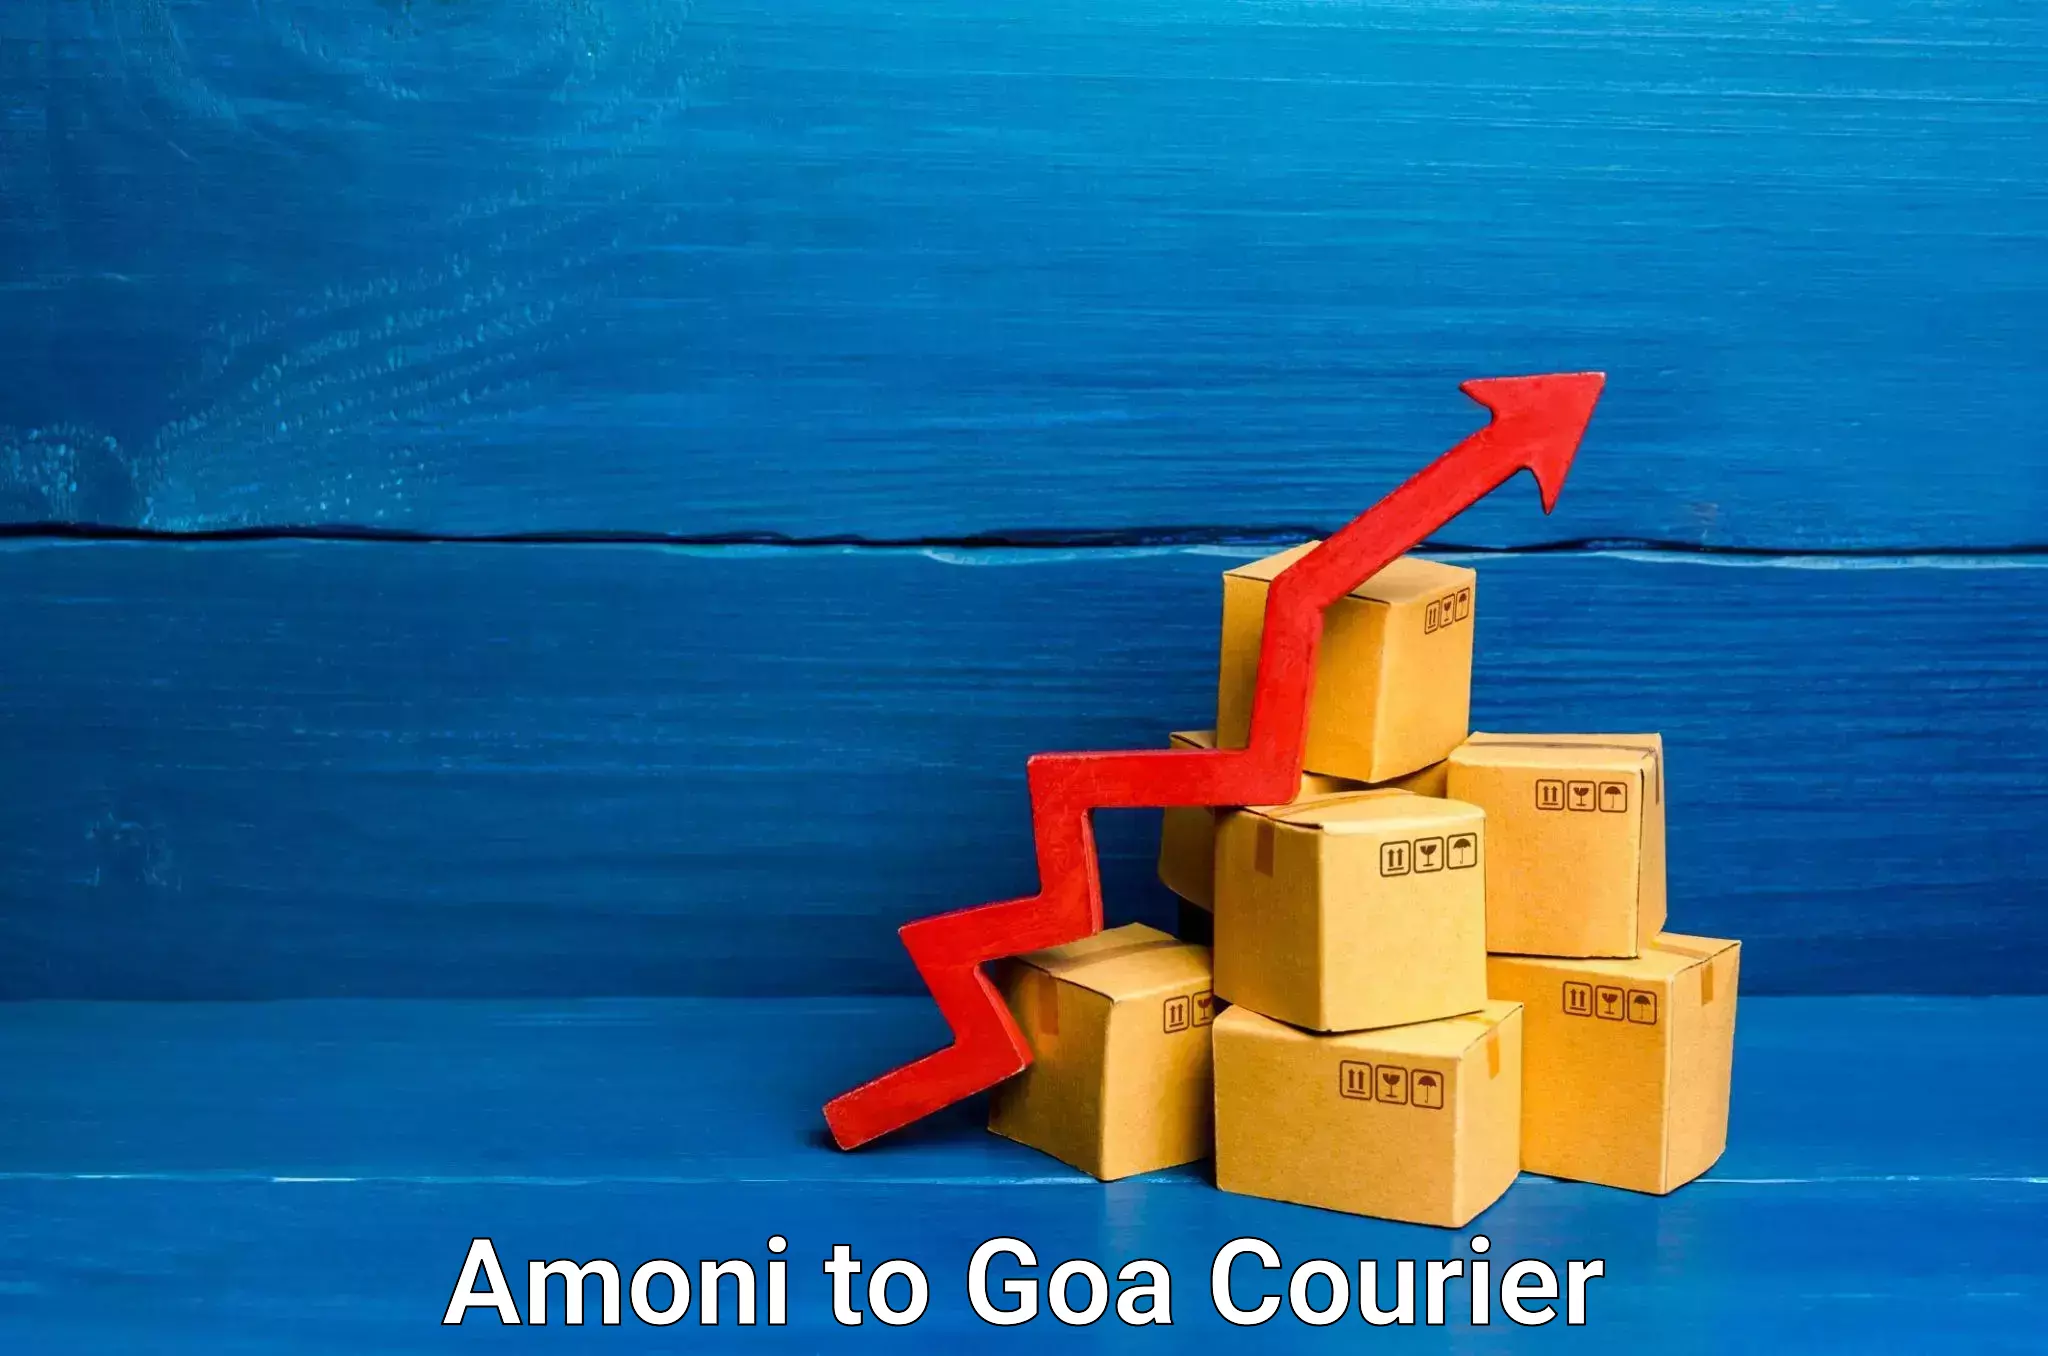 International courier networks Amoni to IIT Goa